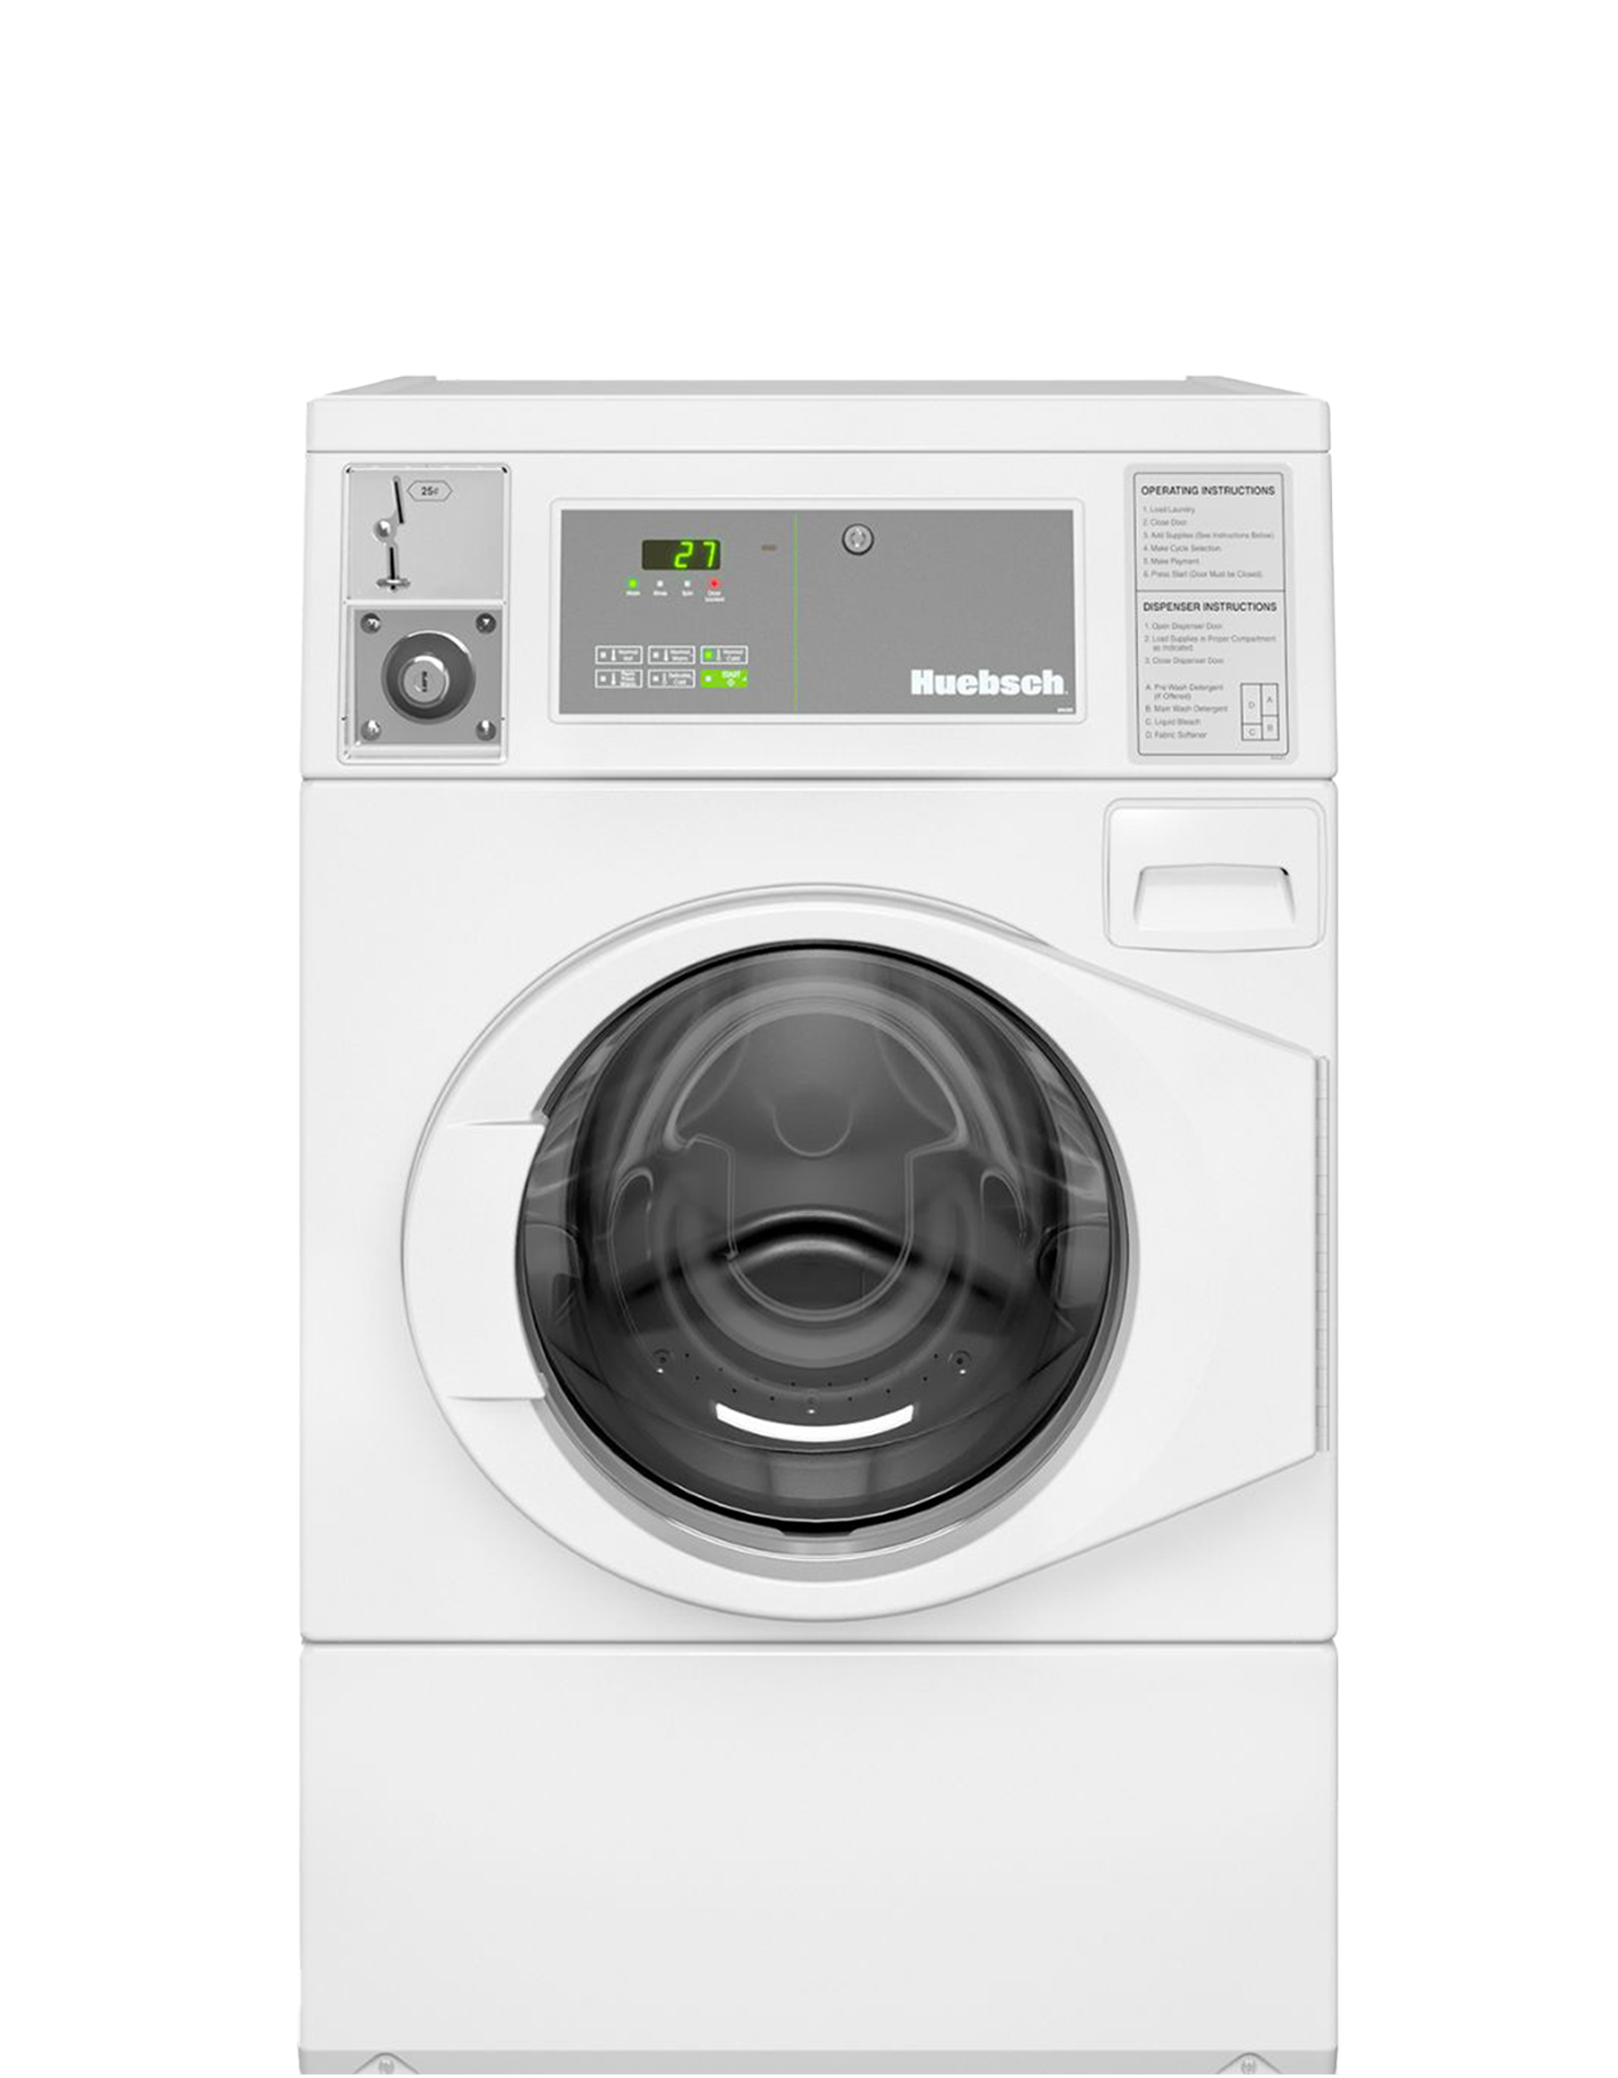 【豪華型】10公斤投幣式直立洗衣機 HFNKCASP115TW01